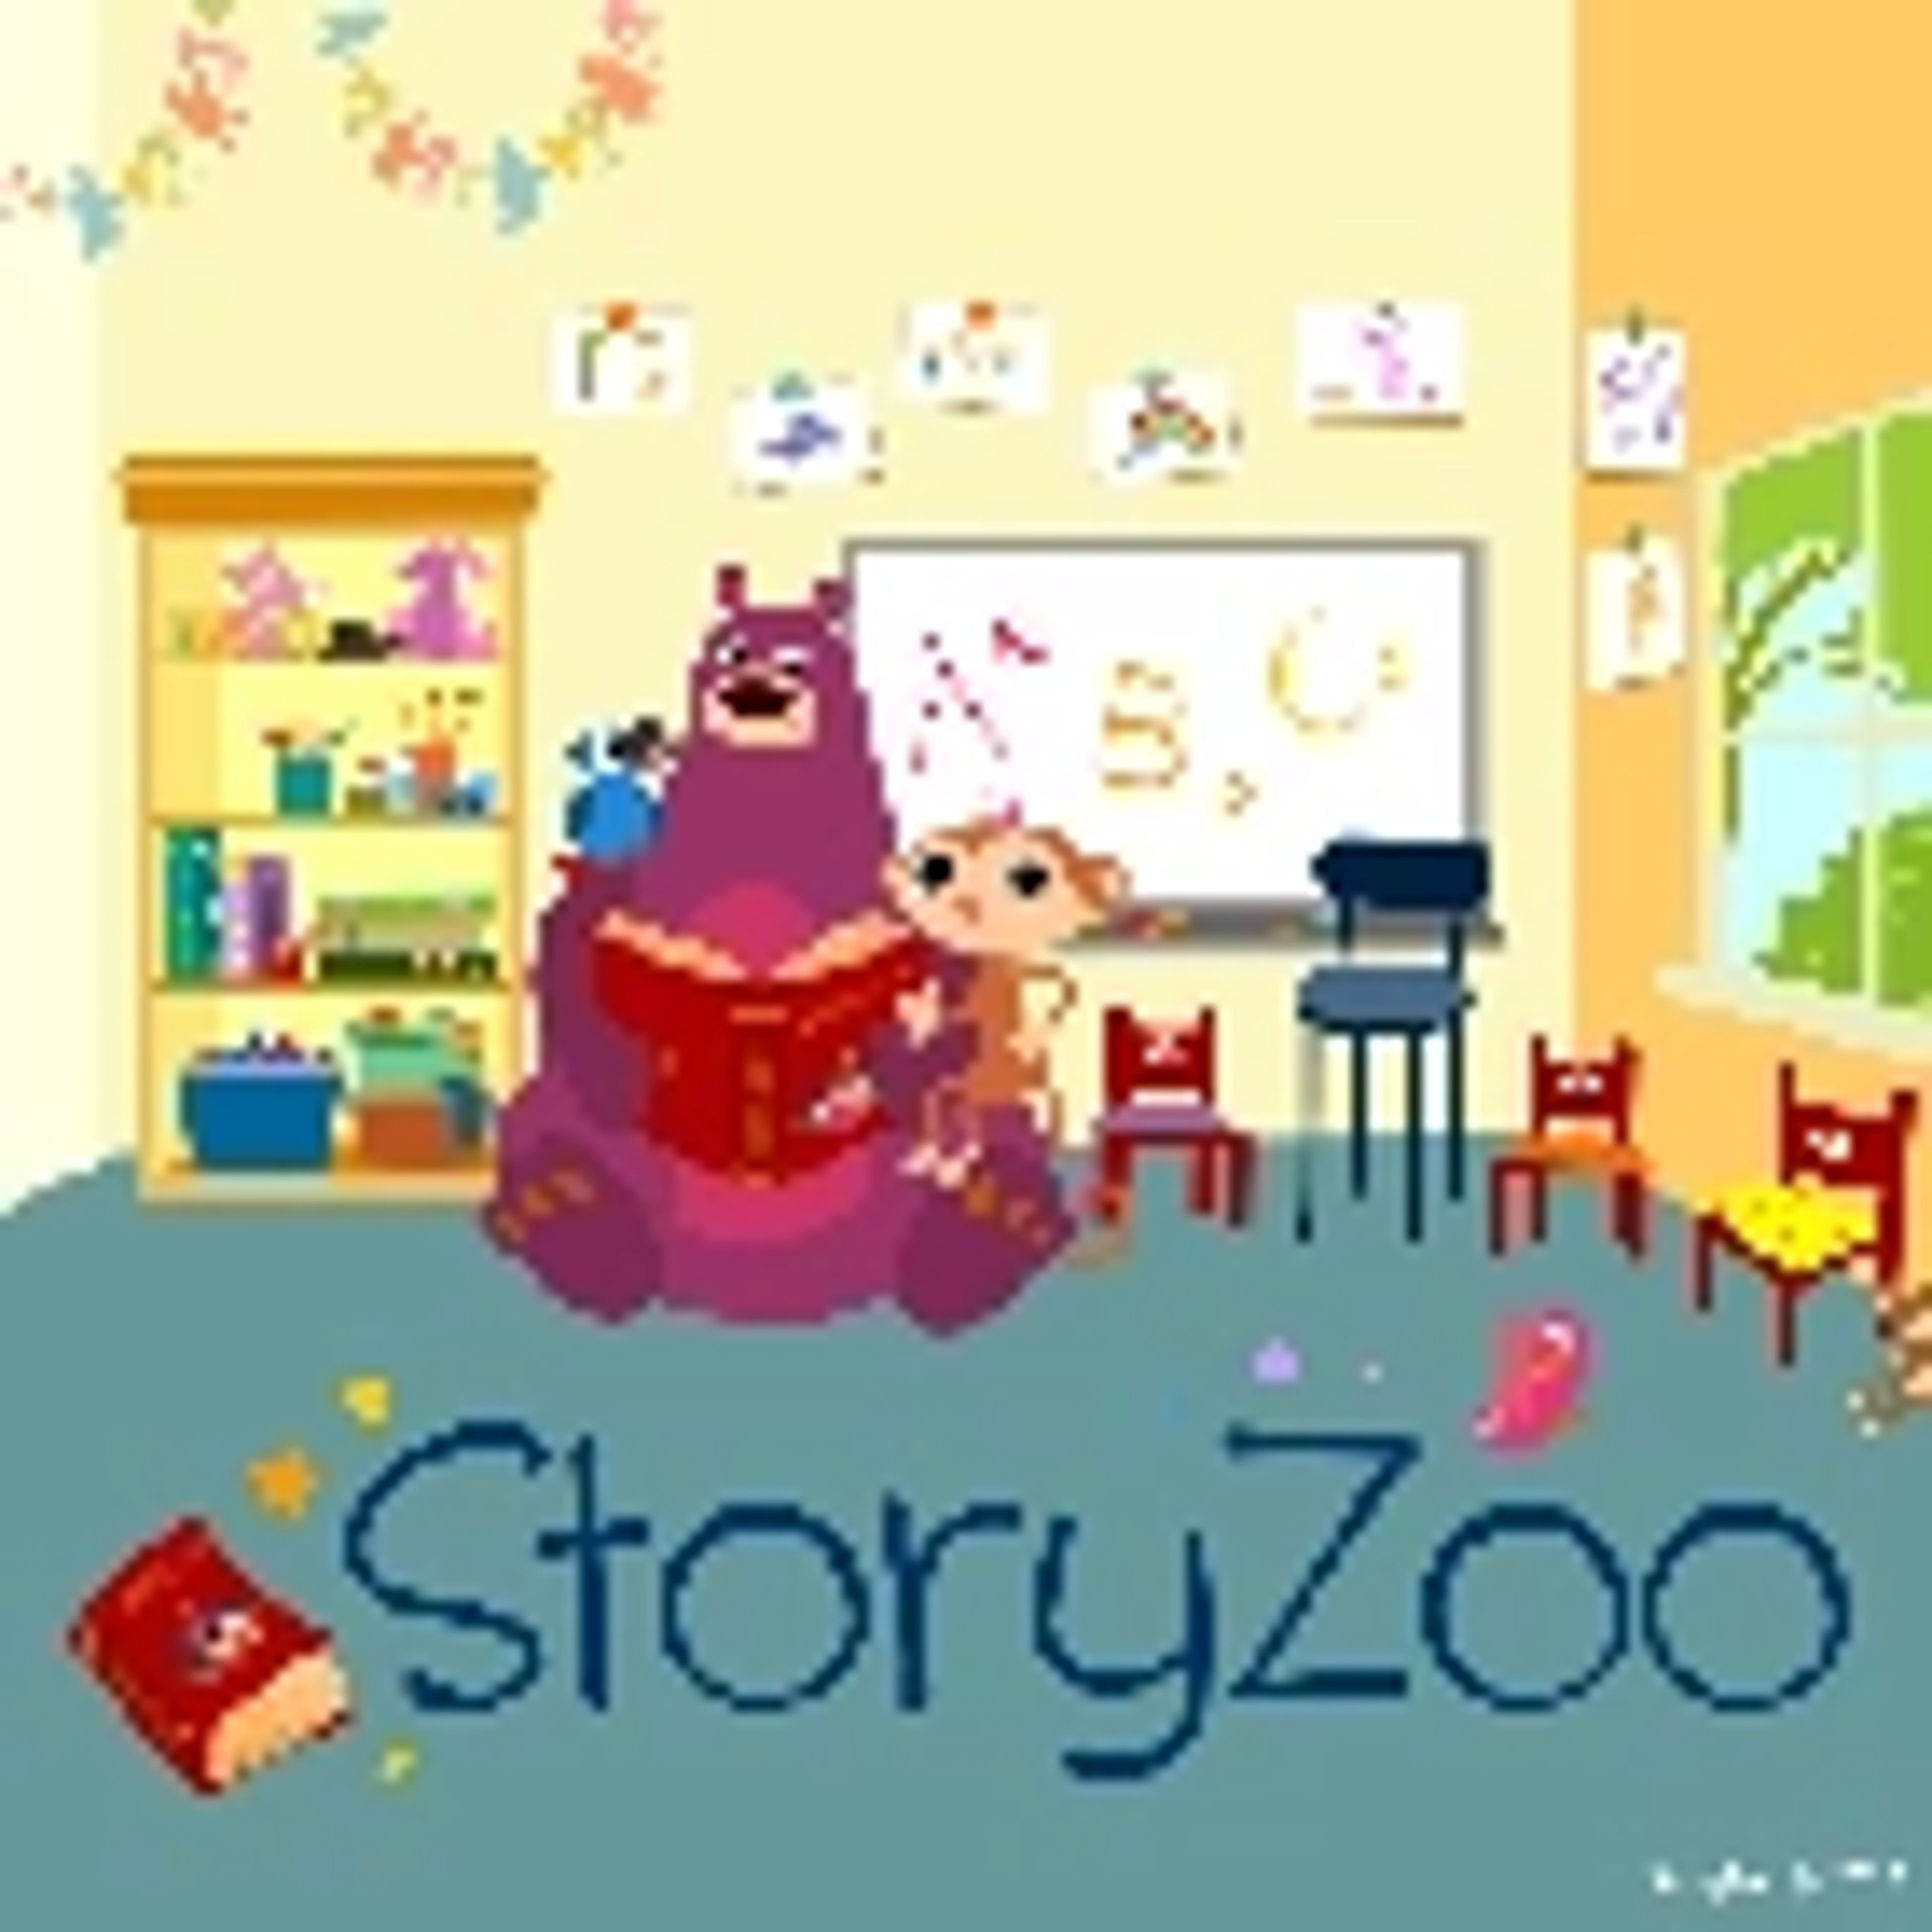 StoryZoo Games